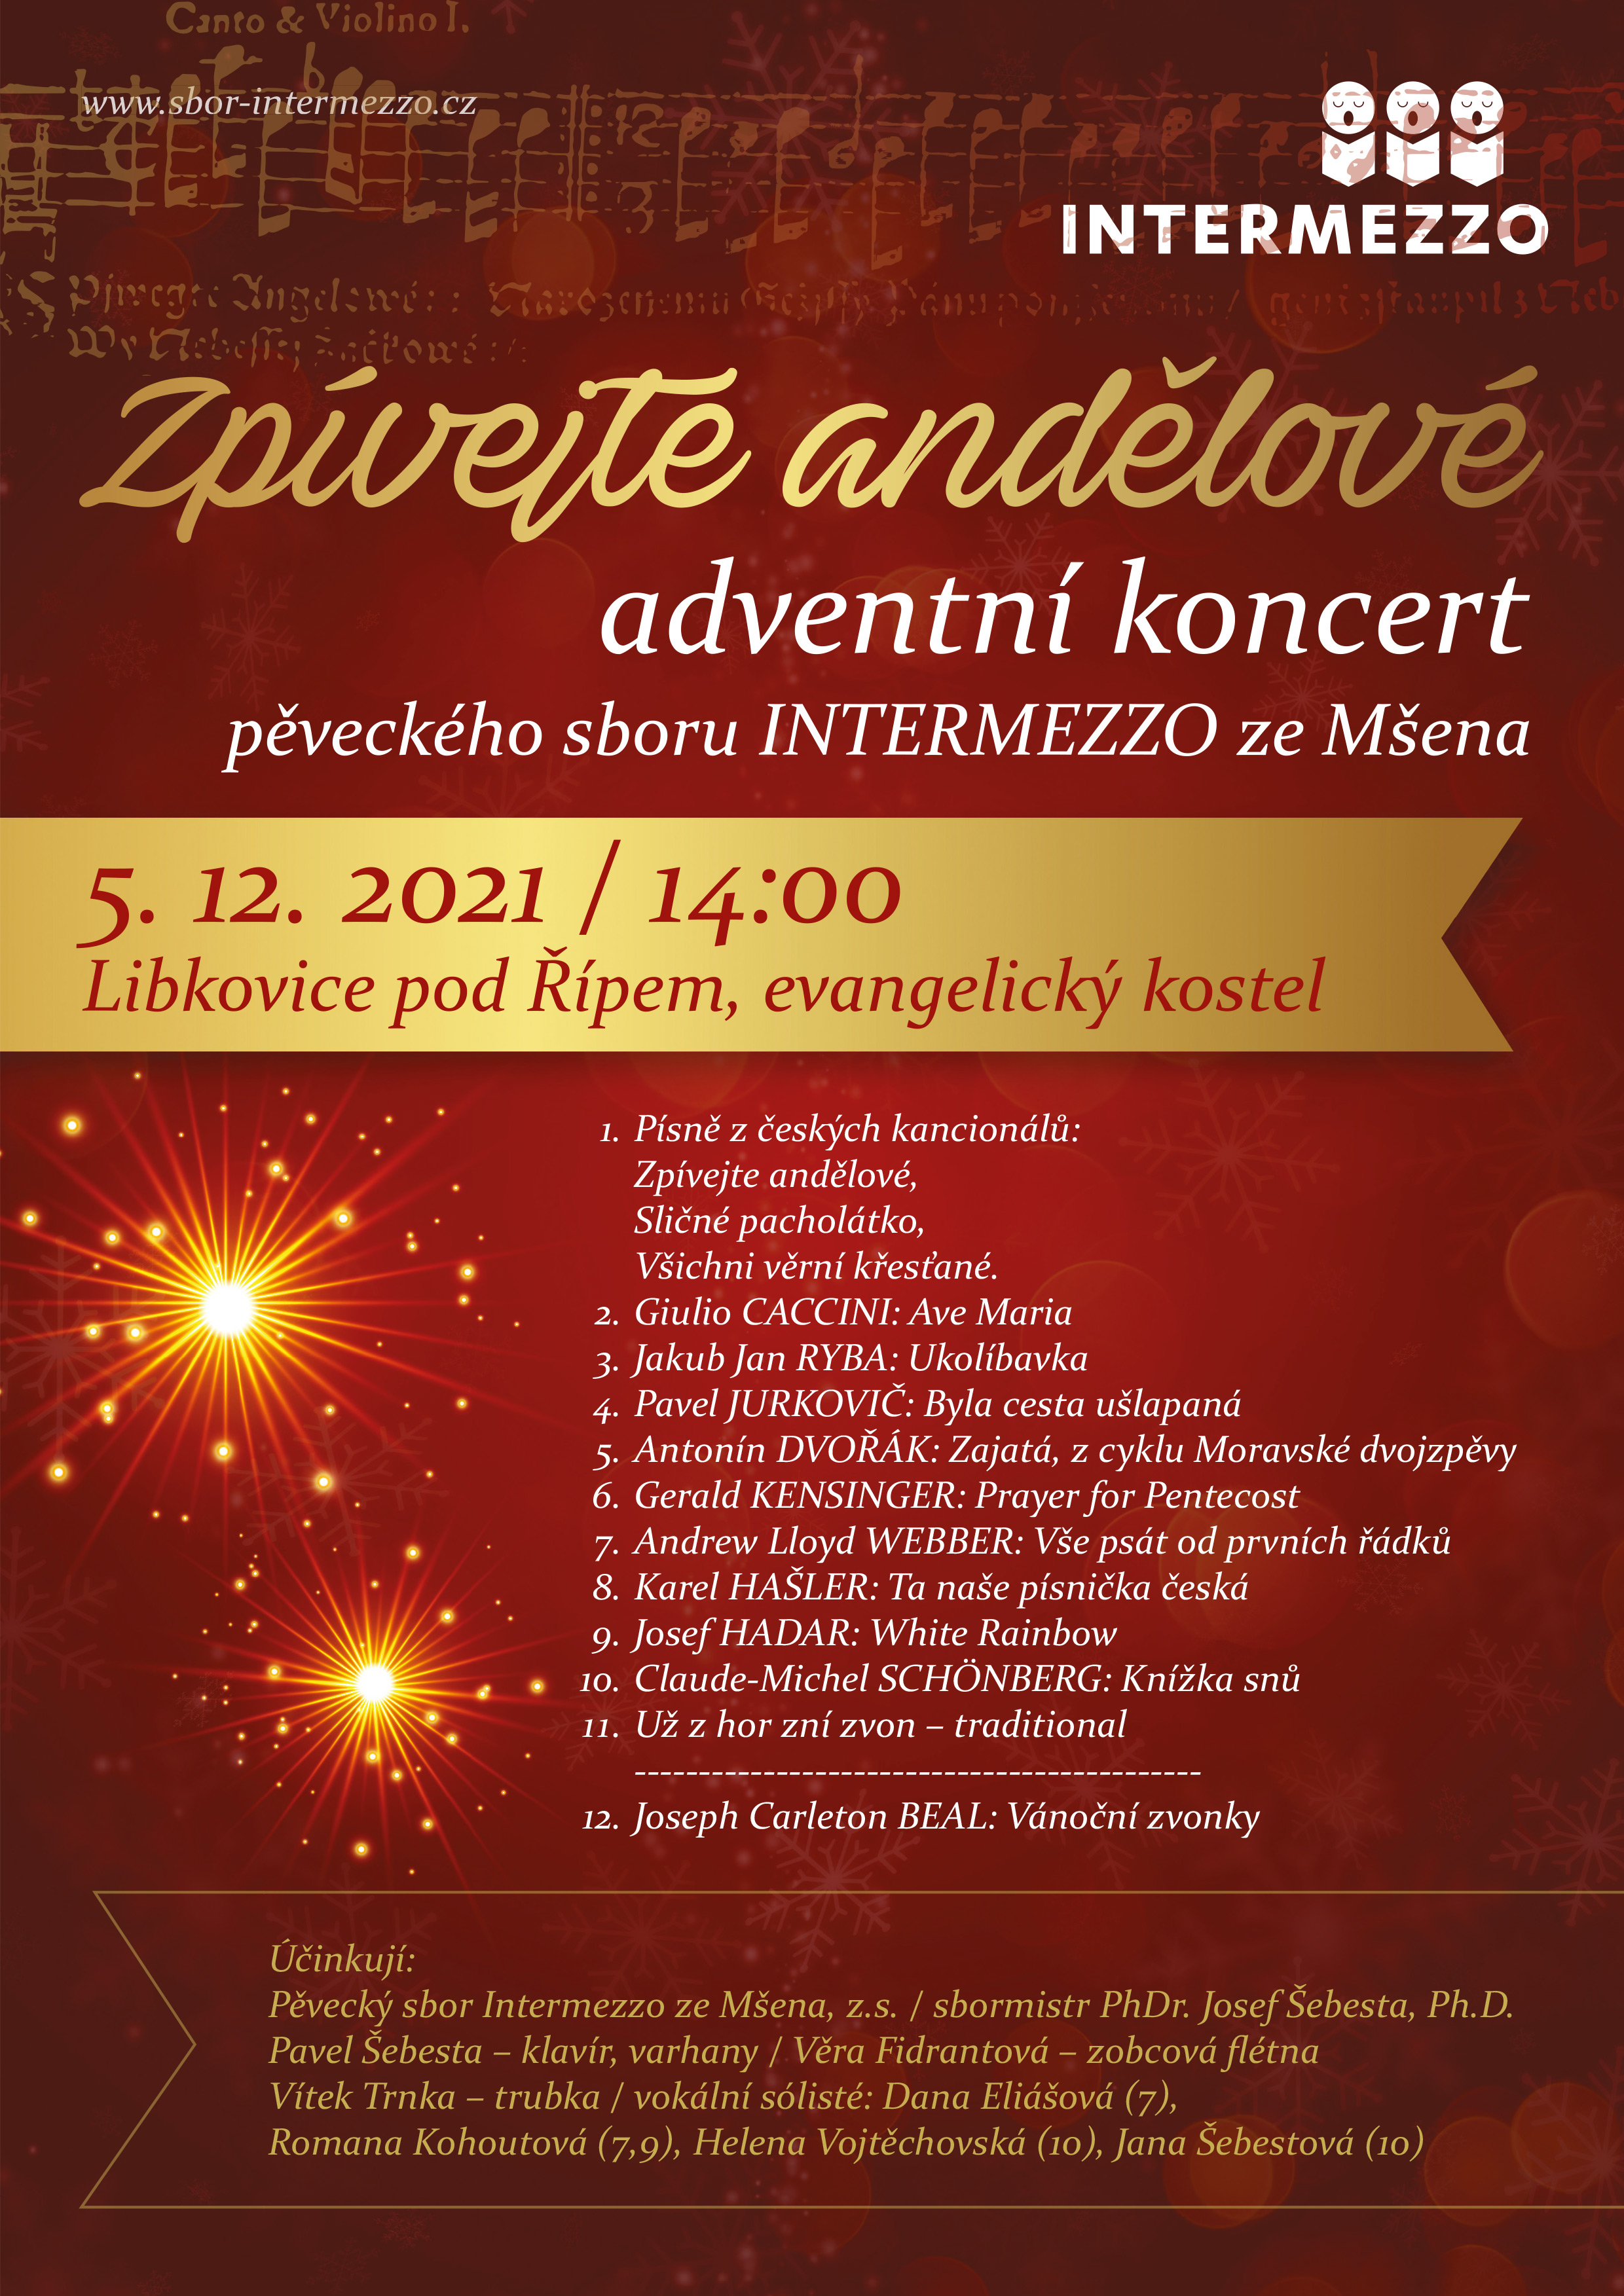 Adventní koncerty, Libkovice pod Řípem, evangelický kostel